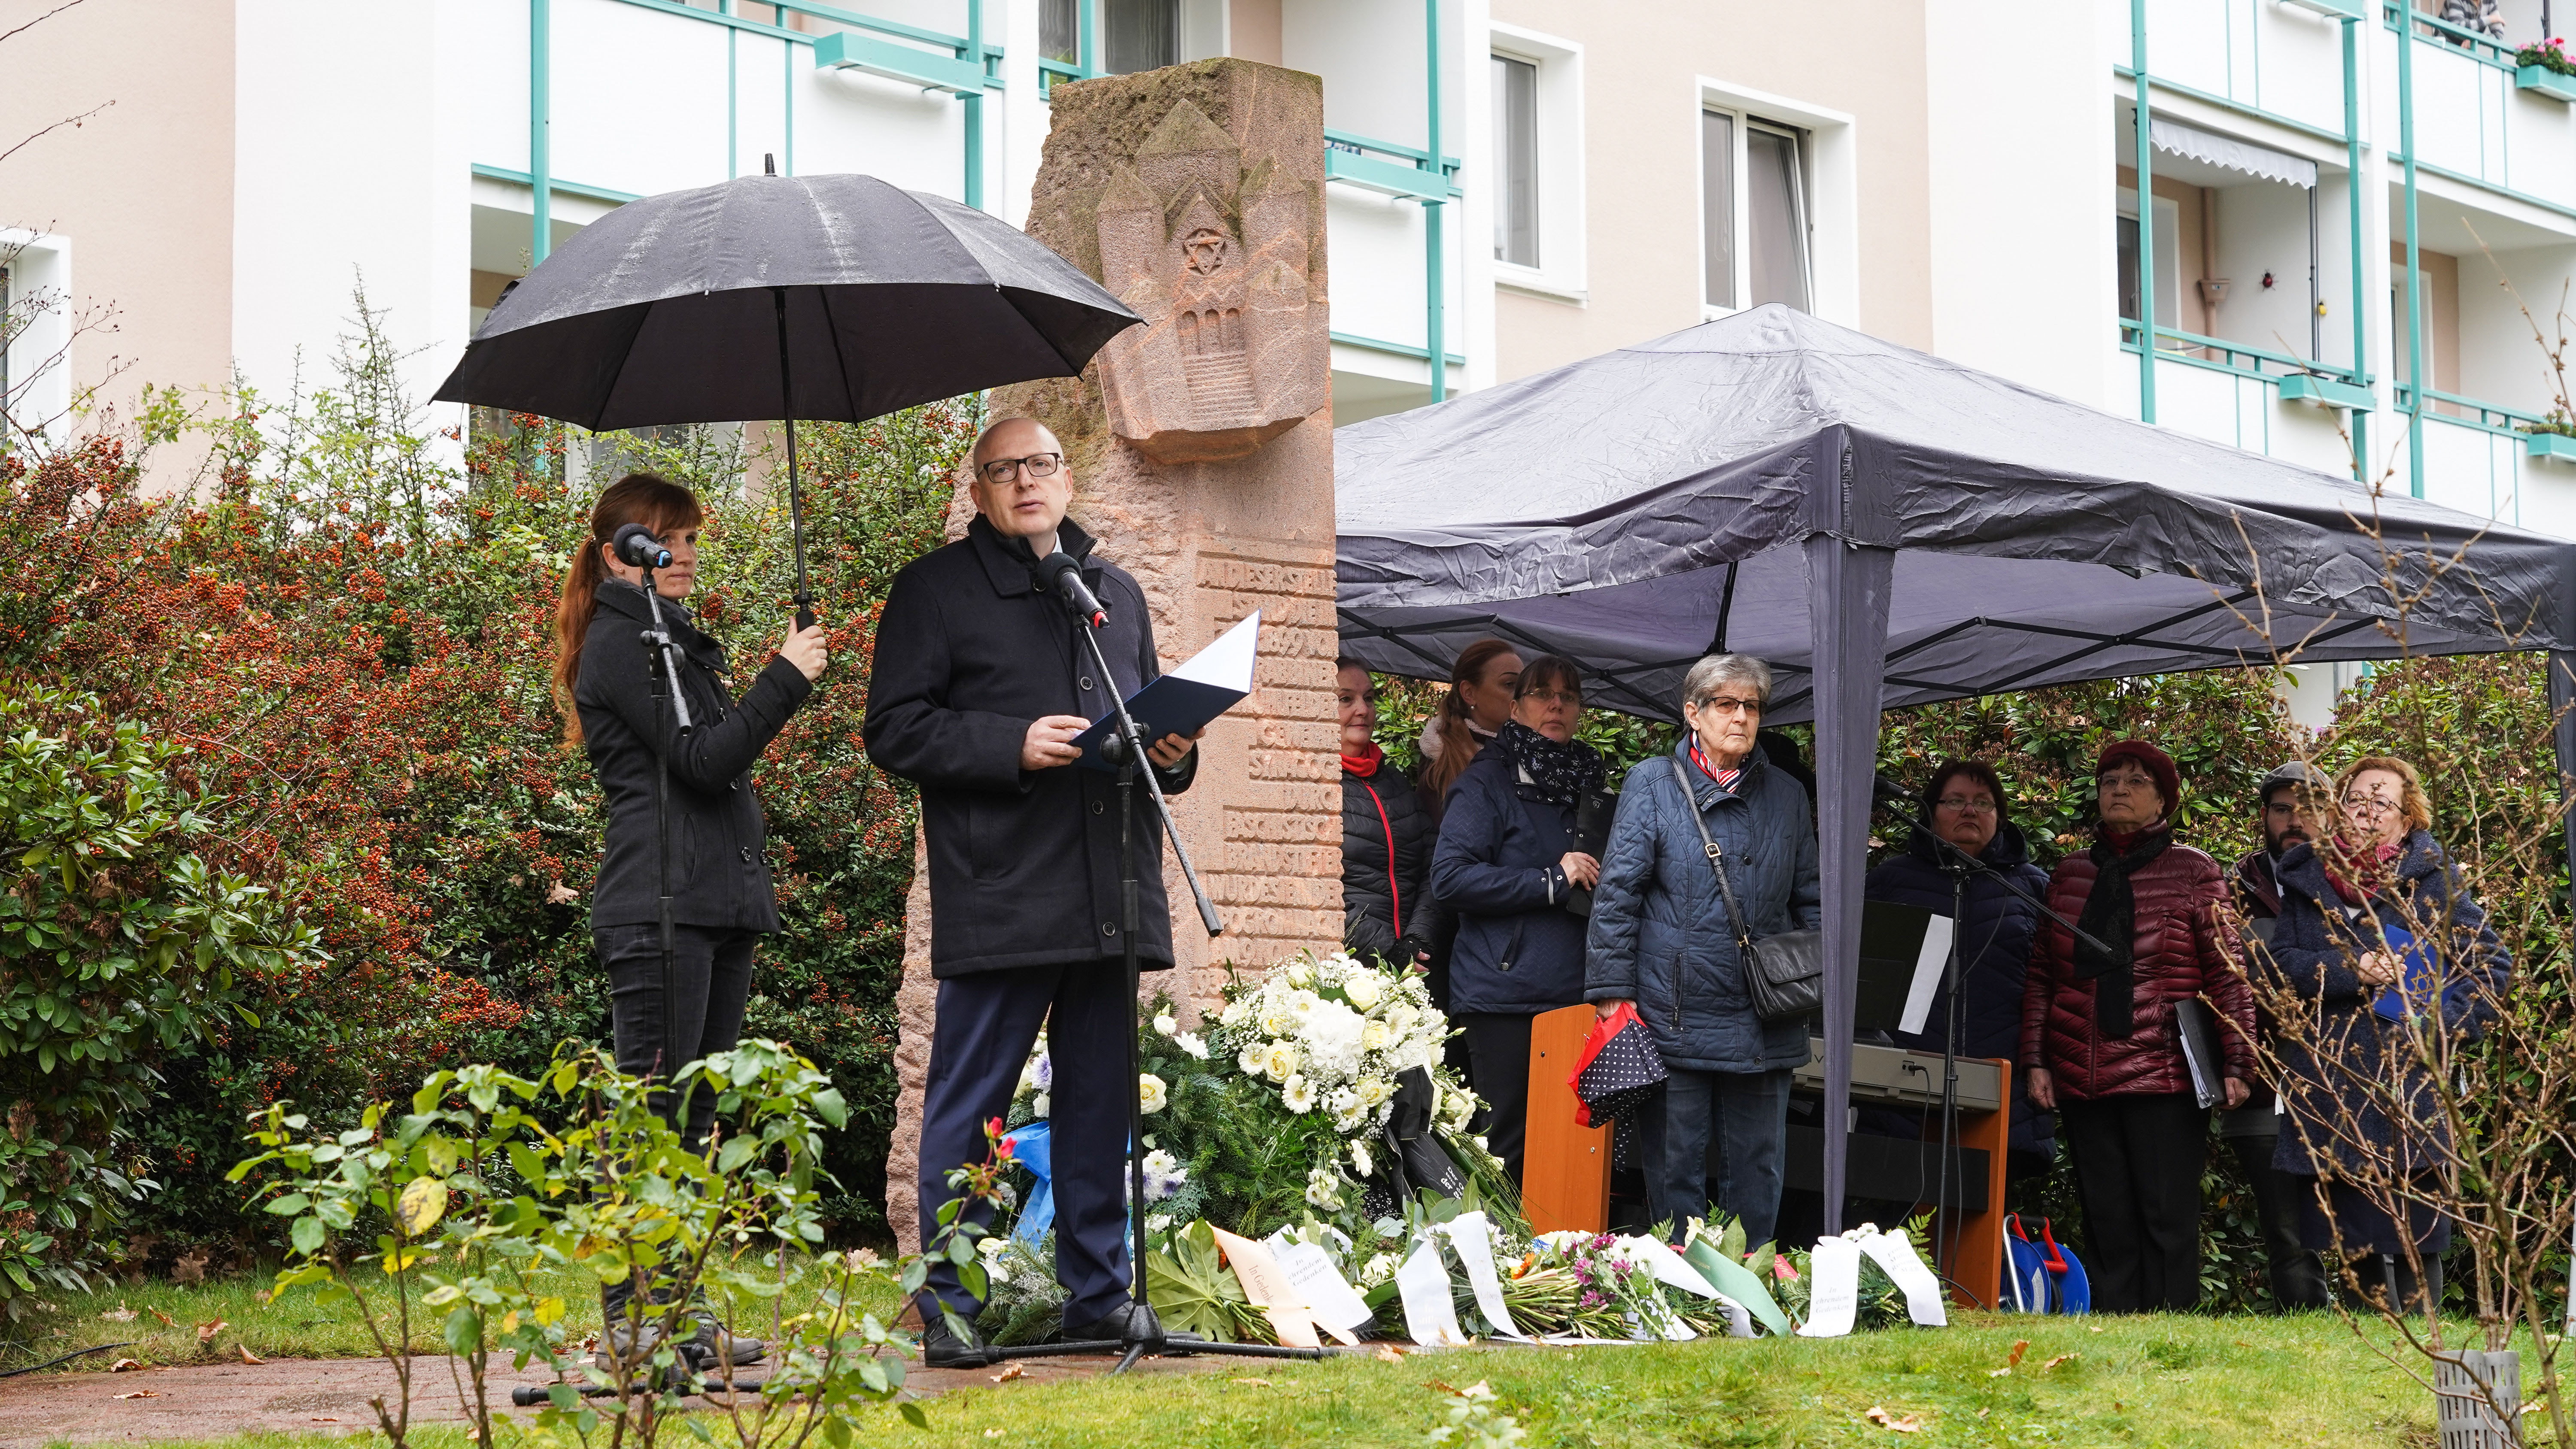 Kranzniederlegung anlässlich des Gedenkens an die Opfer der Reichspogromnacht am 9. November